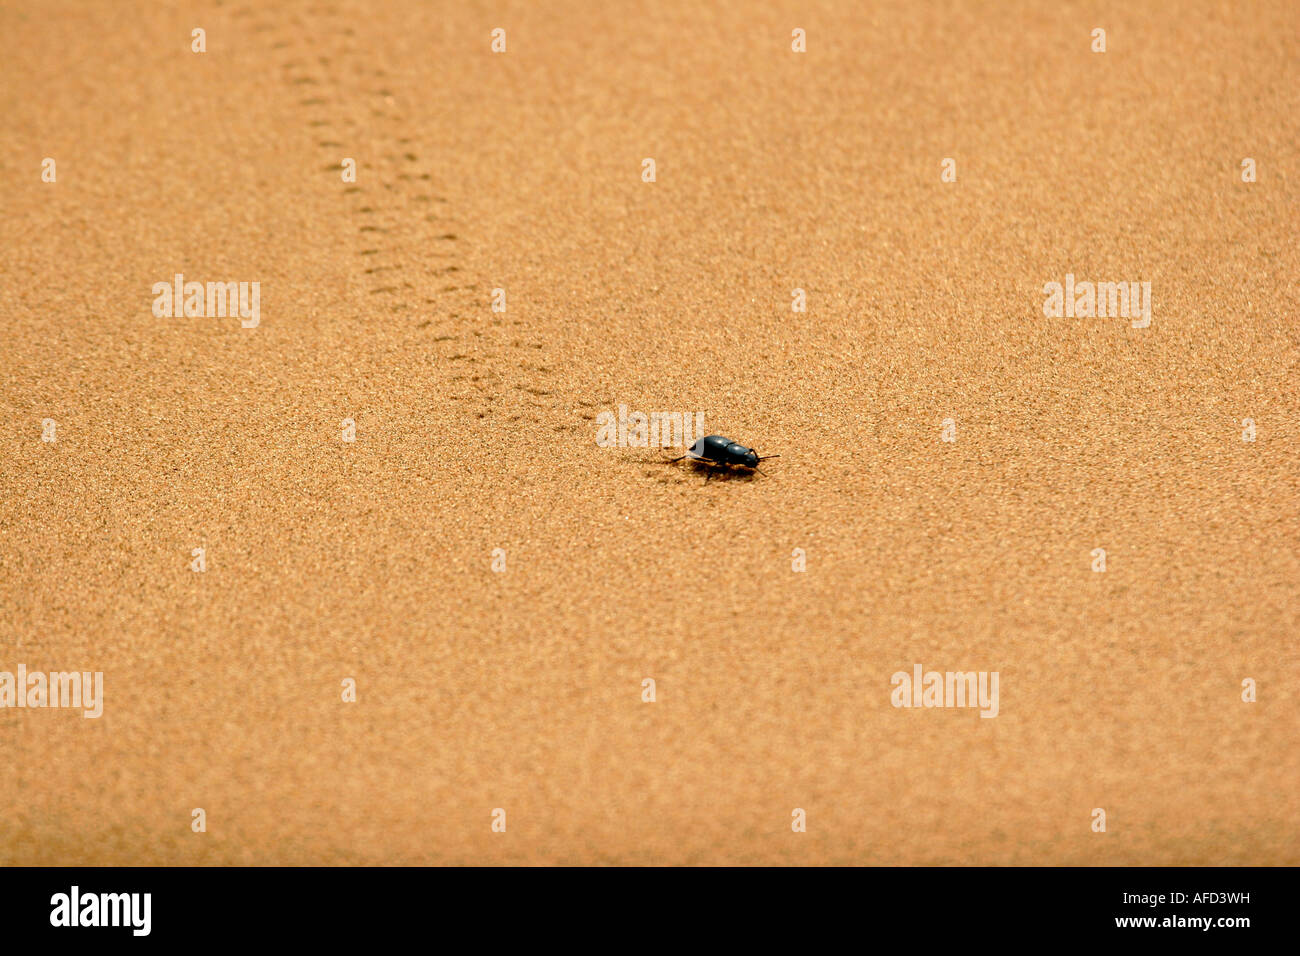 Beetle marche sur le sable dans le désert de Tengger Ningxia Chine Août 2007 Banque D'Images